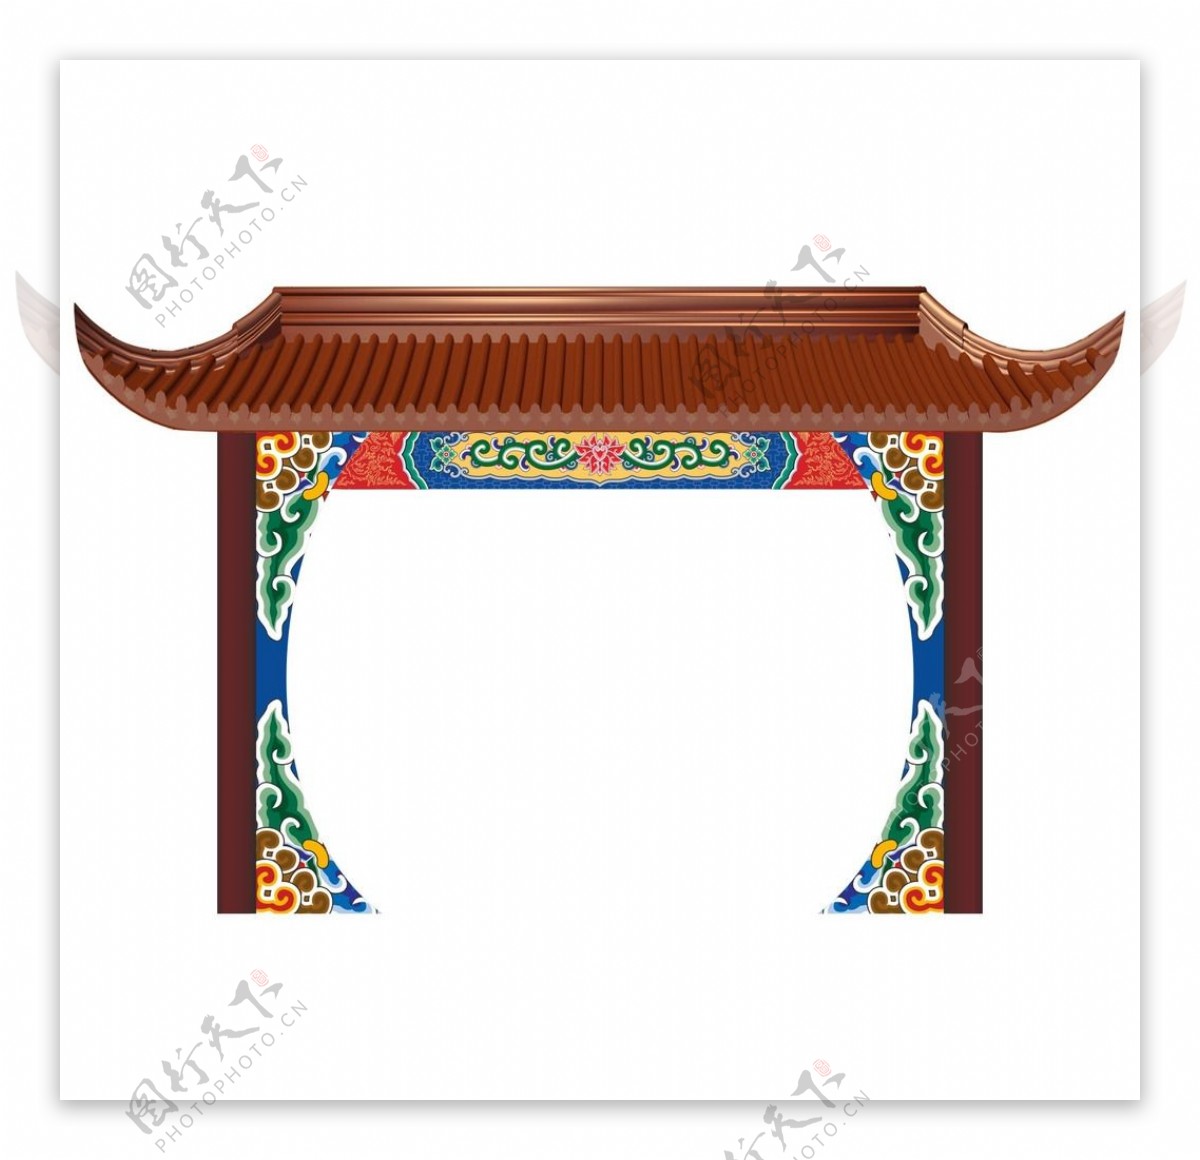 中式婚礼拱门图片